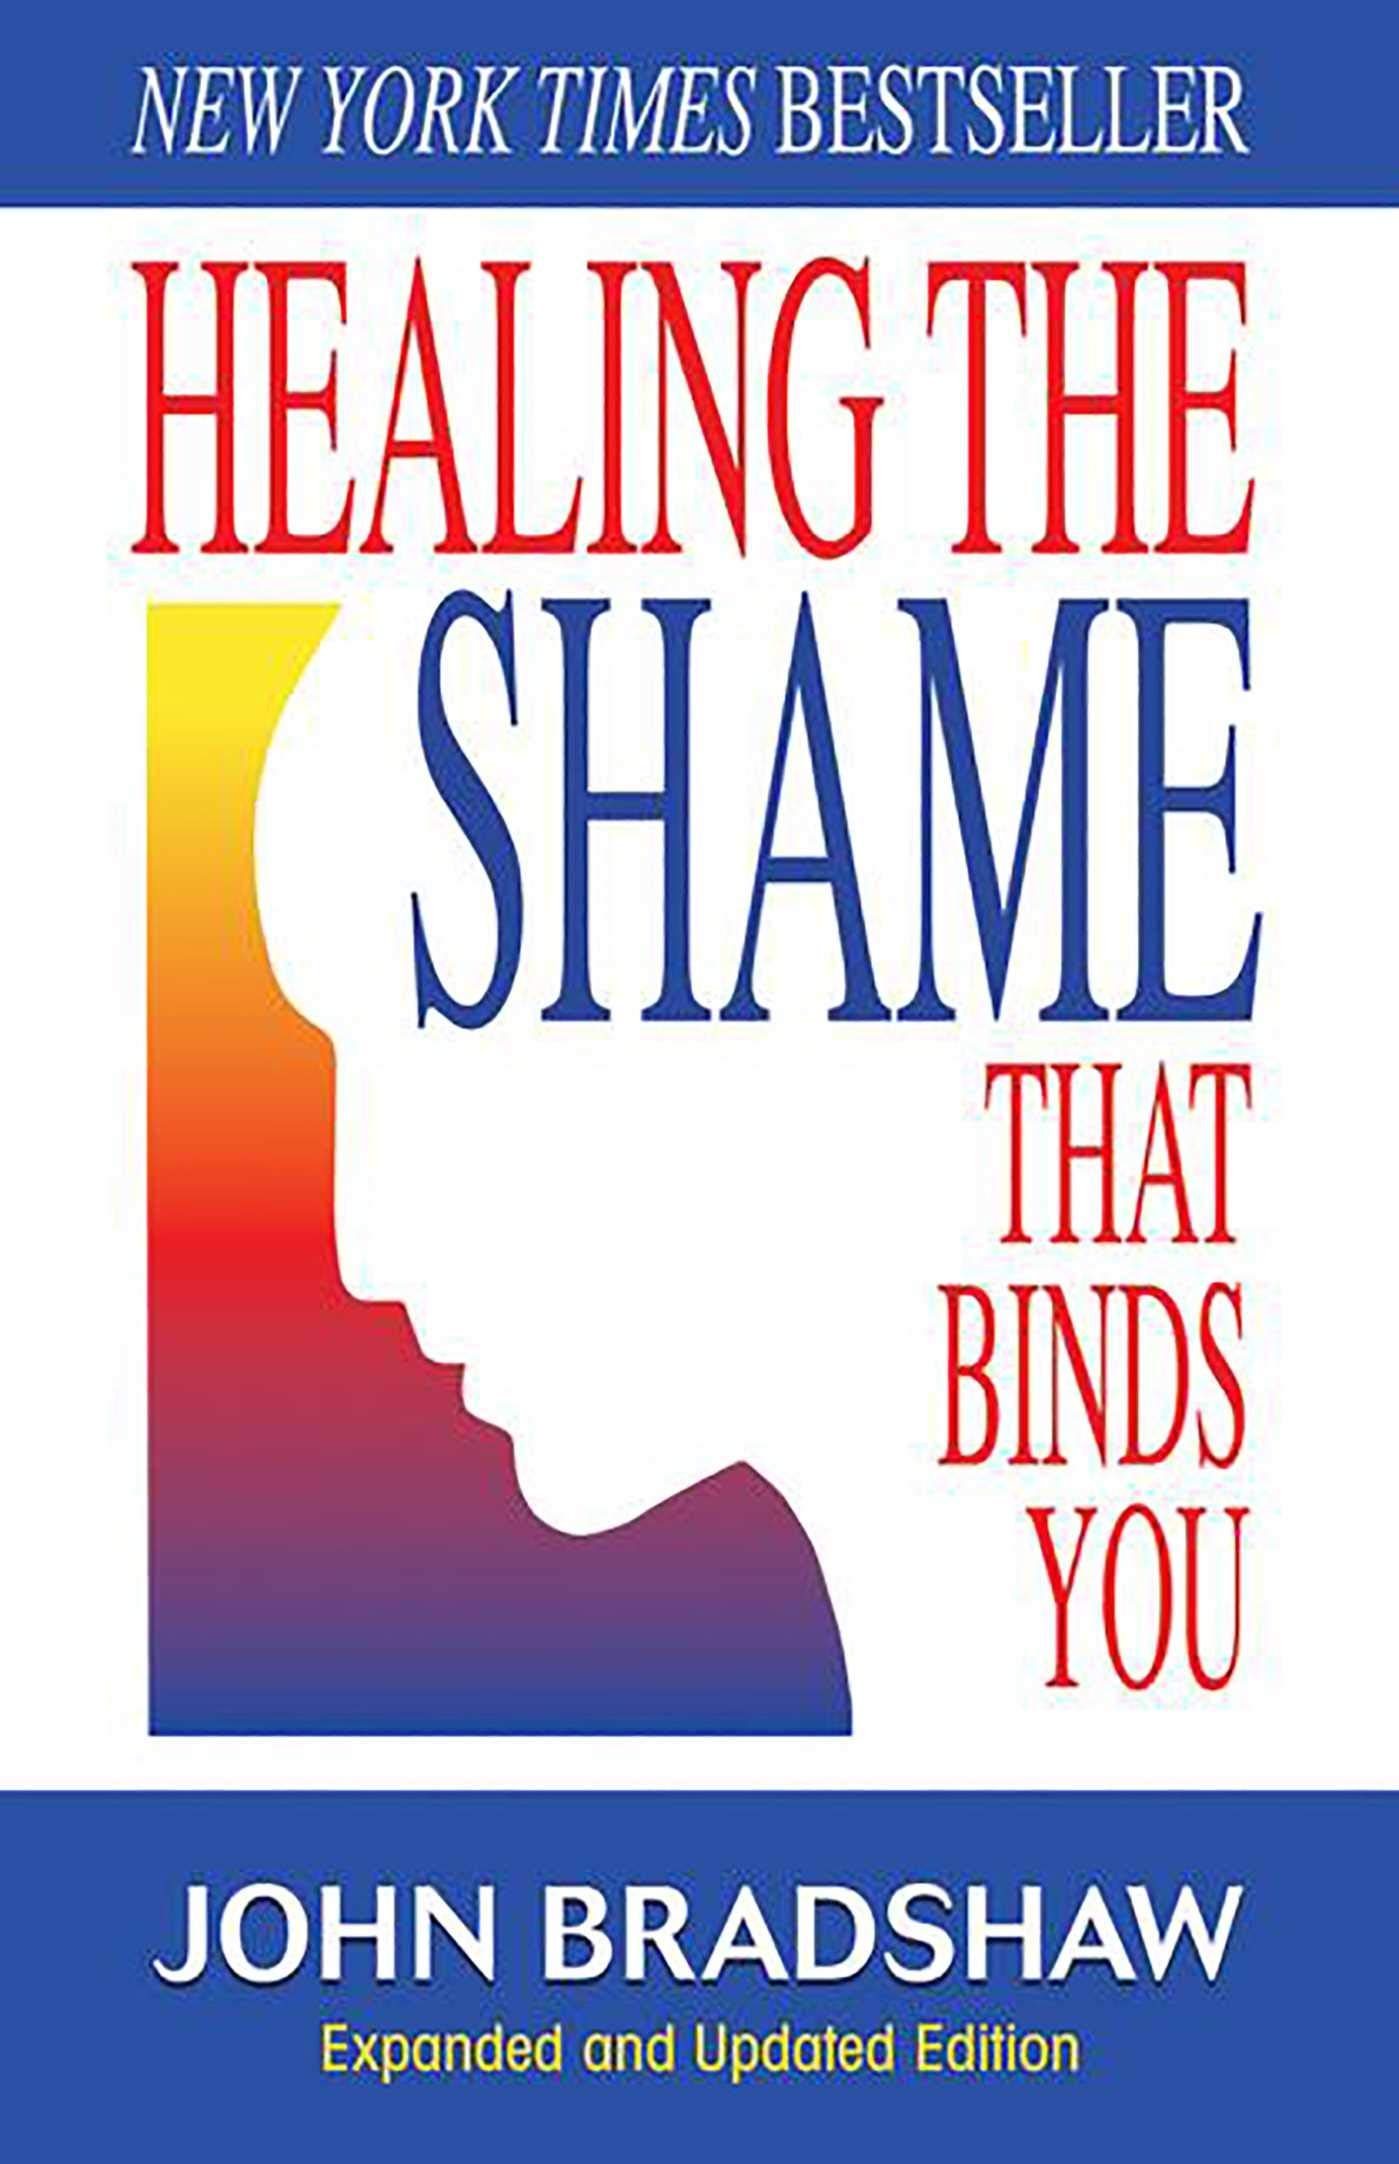 Healing the Shame that Binds You by John Bradshaw